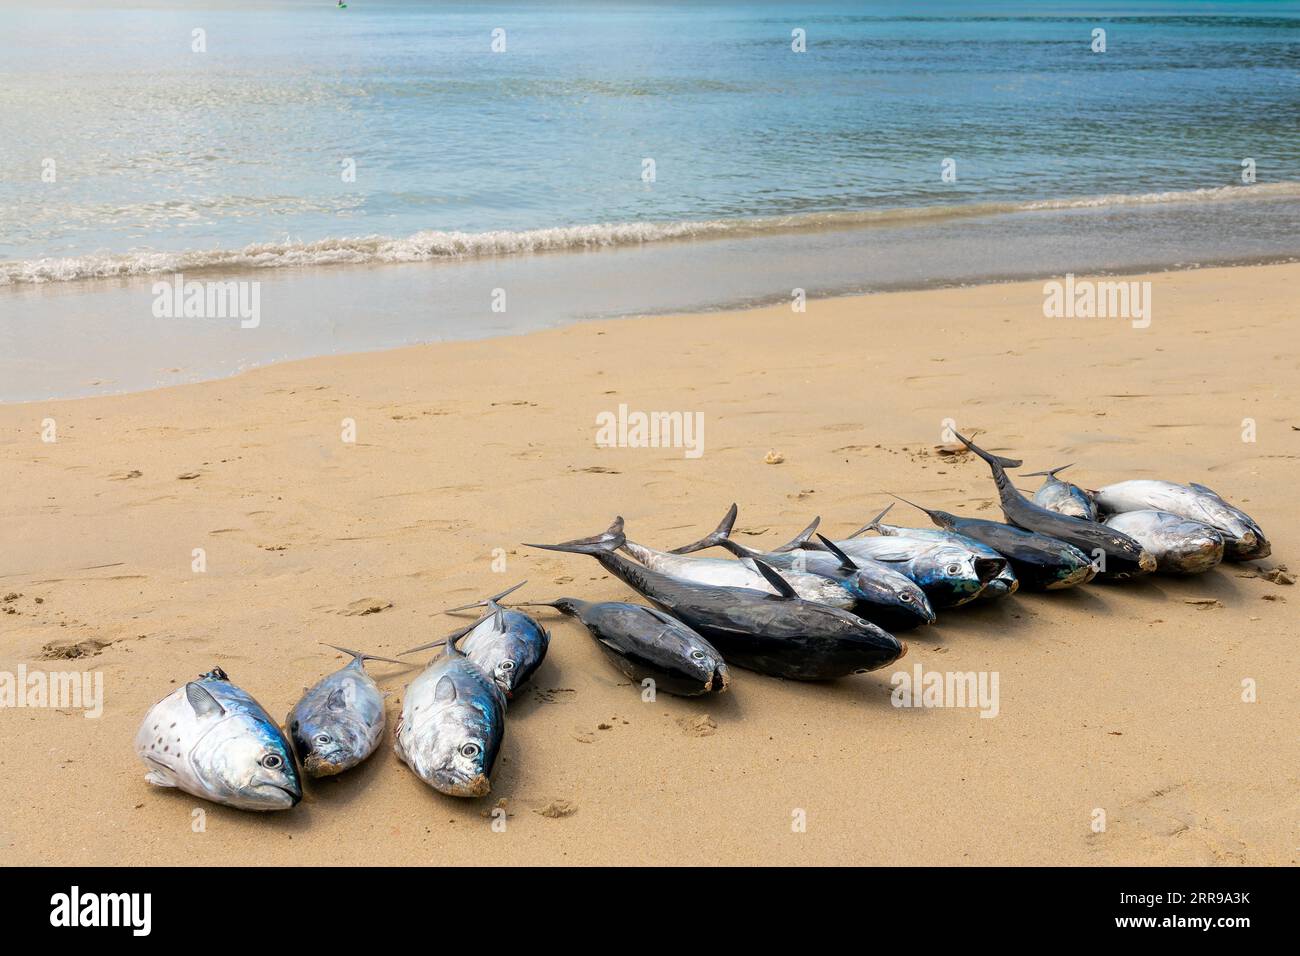 Molti pesci grossi freschi, pescato del giorno sulla sabbia di una spiaggia delle isole Seychelles Foto Stock